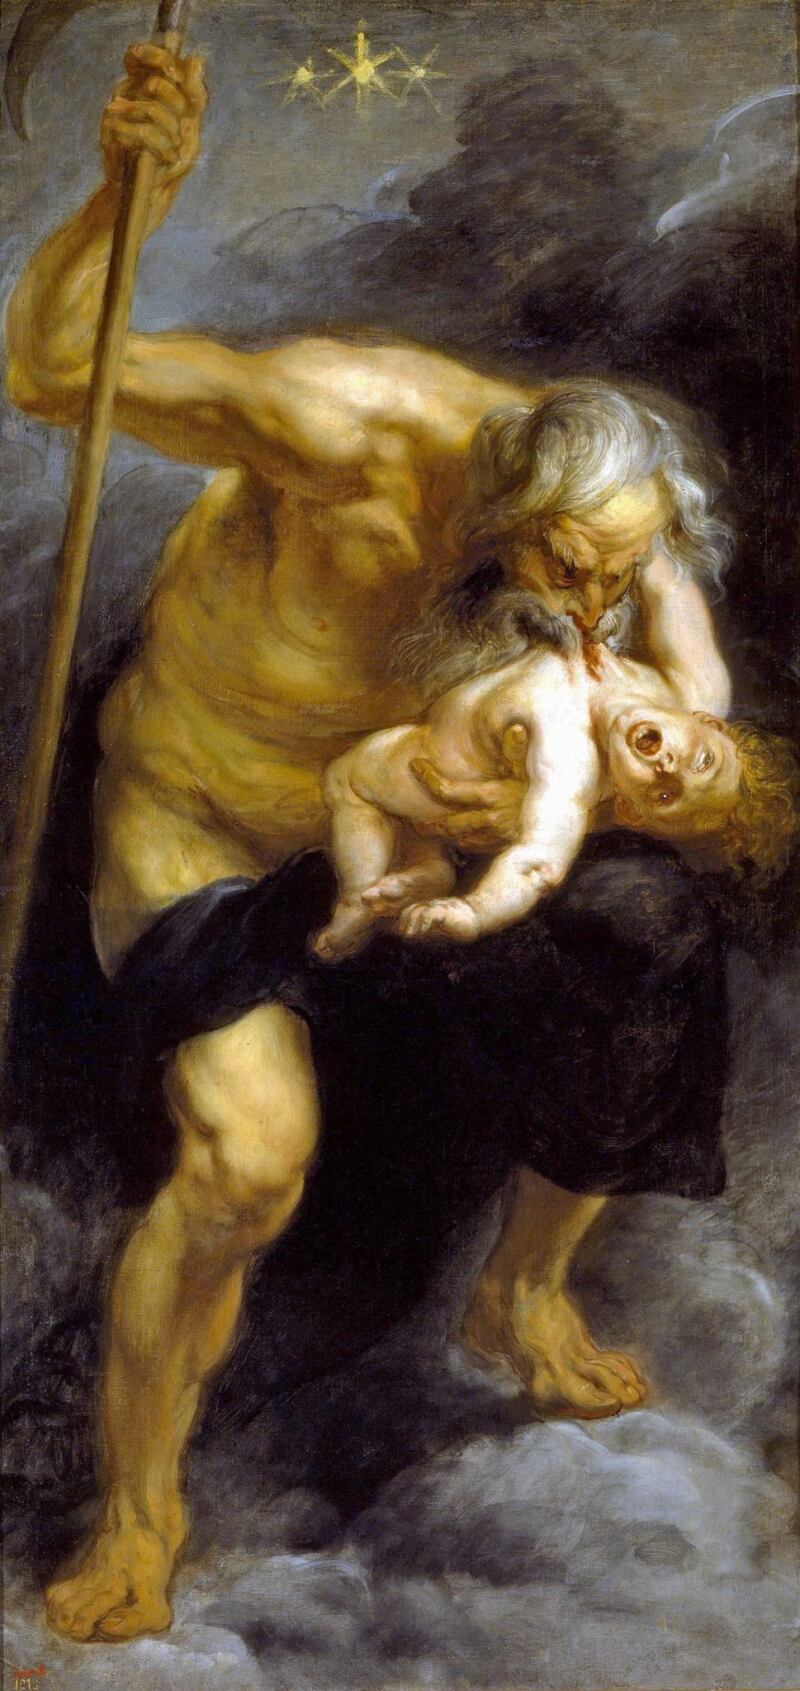 Saturno devorando a su hijo. Rubens. Museo Del Prado, Madrid